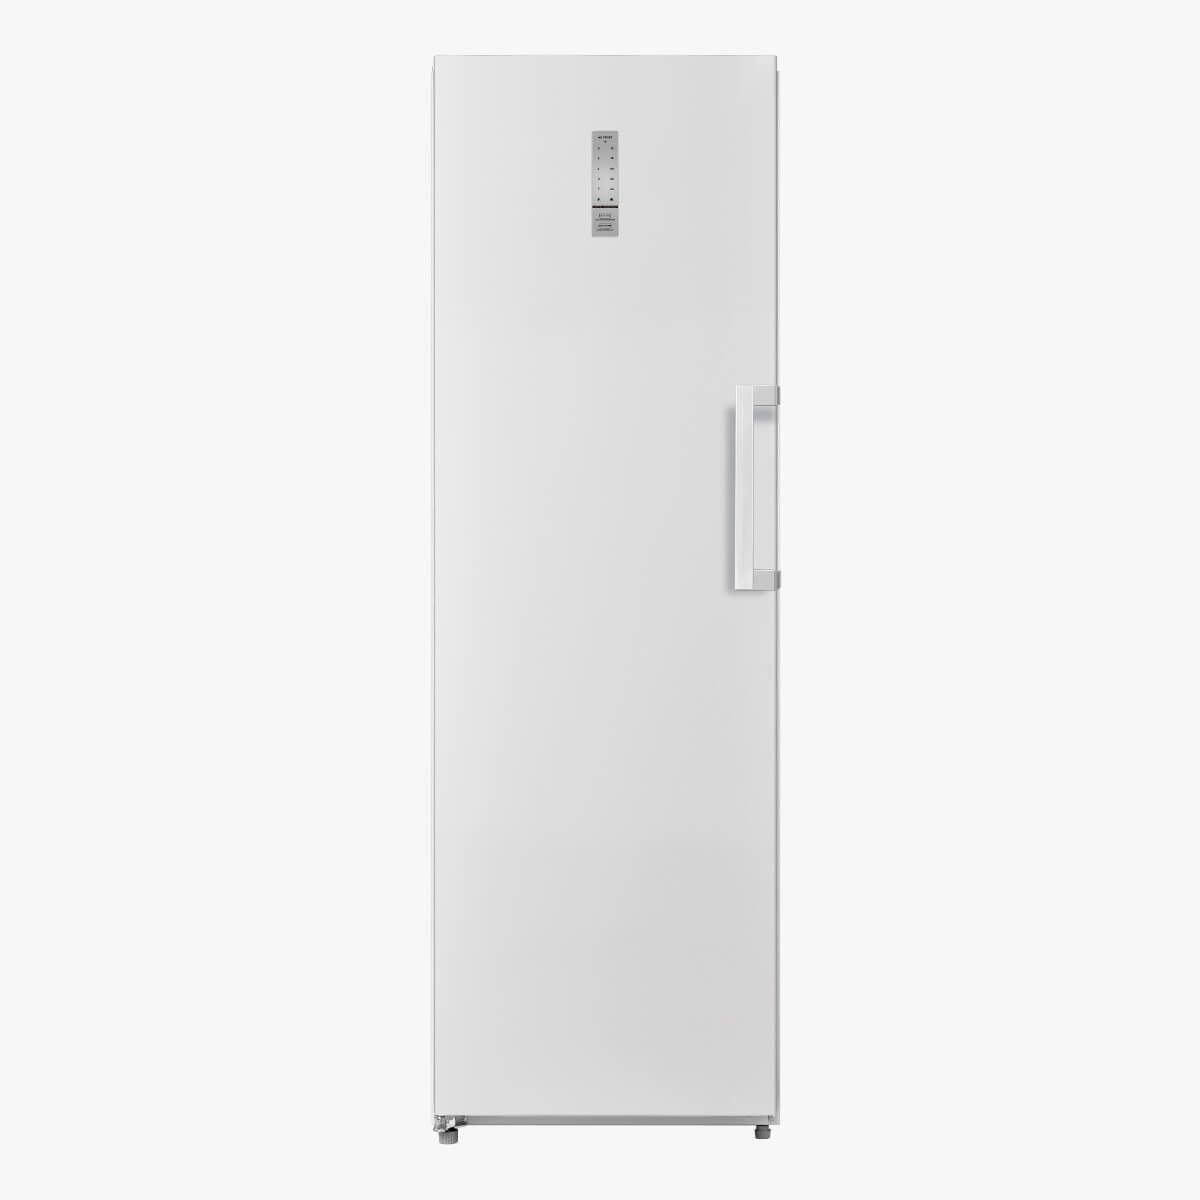 Repuestos López - Lavadoras y Refrigeradores